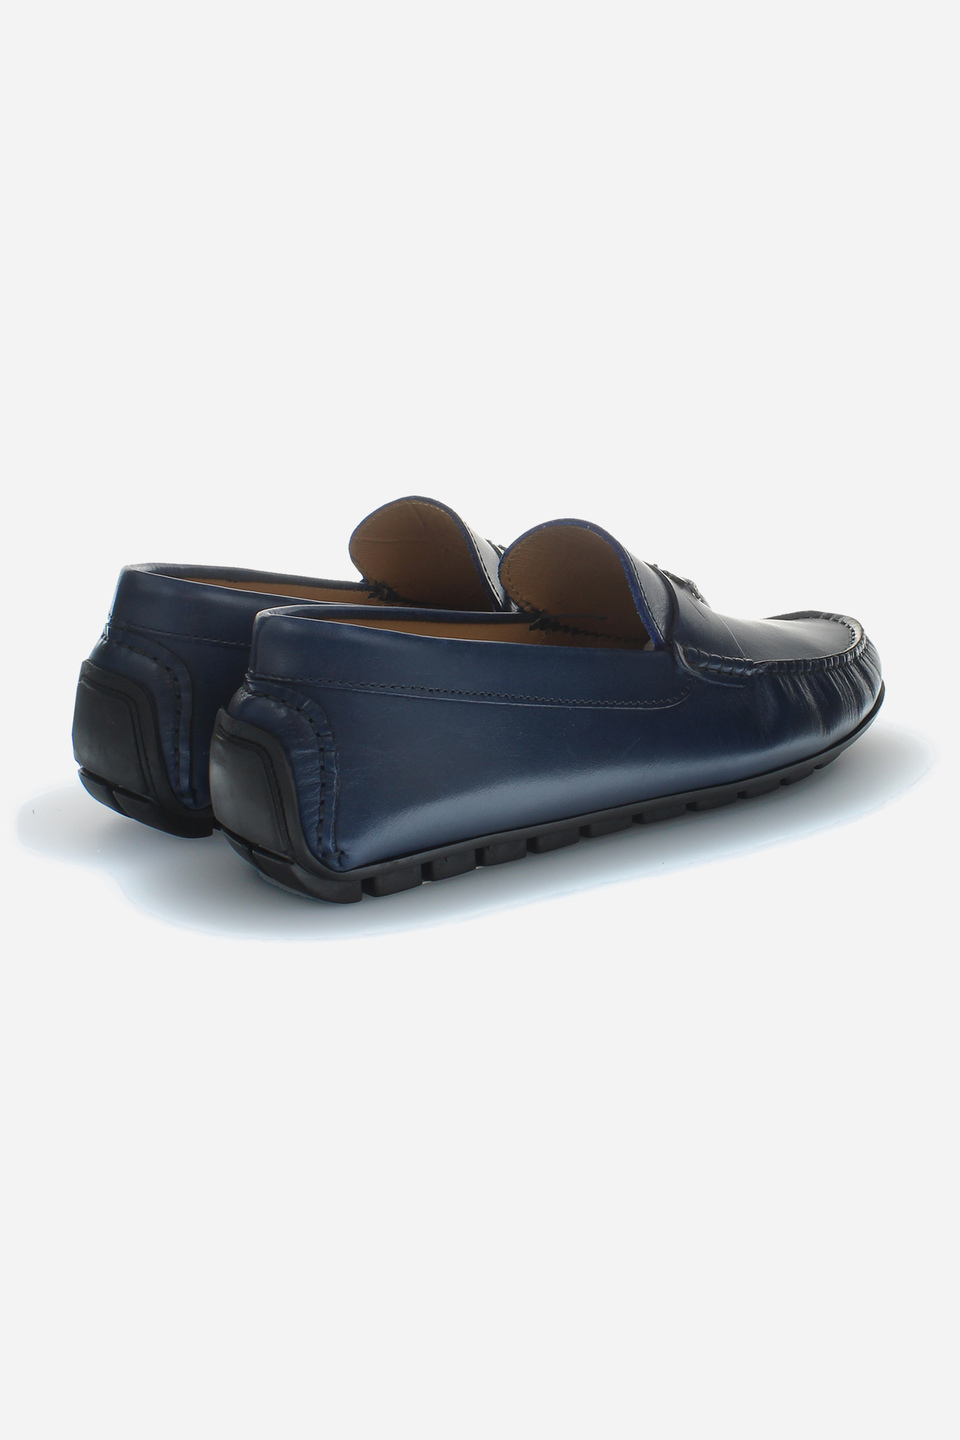 Calfskin leather moccasins | La Martina - Official Online Shop